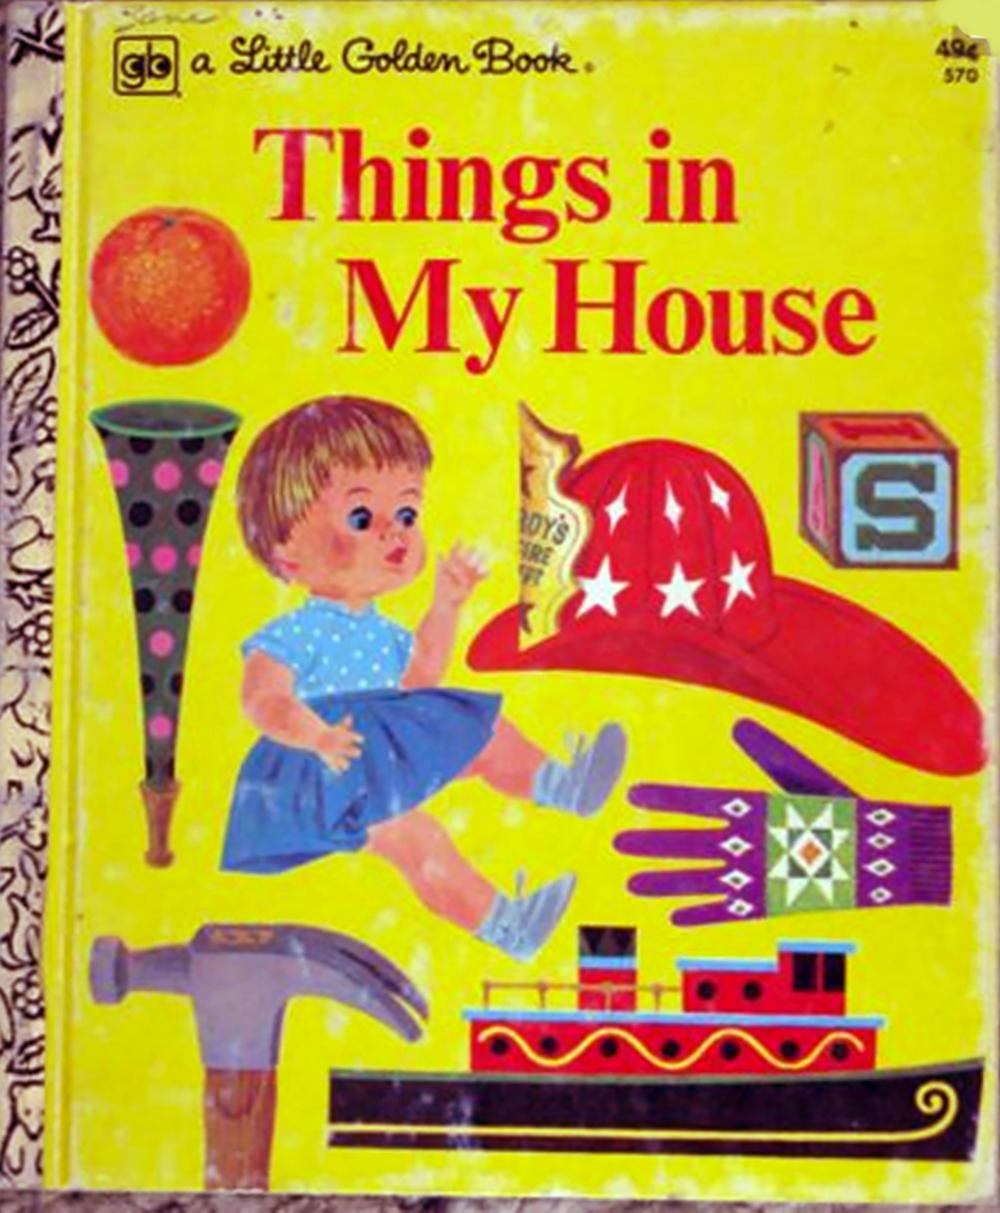 Petit livre doré « Things in My House », livre pour enfants  Couverture - Illustration d'art  - Painting de Joe Kaufman